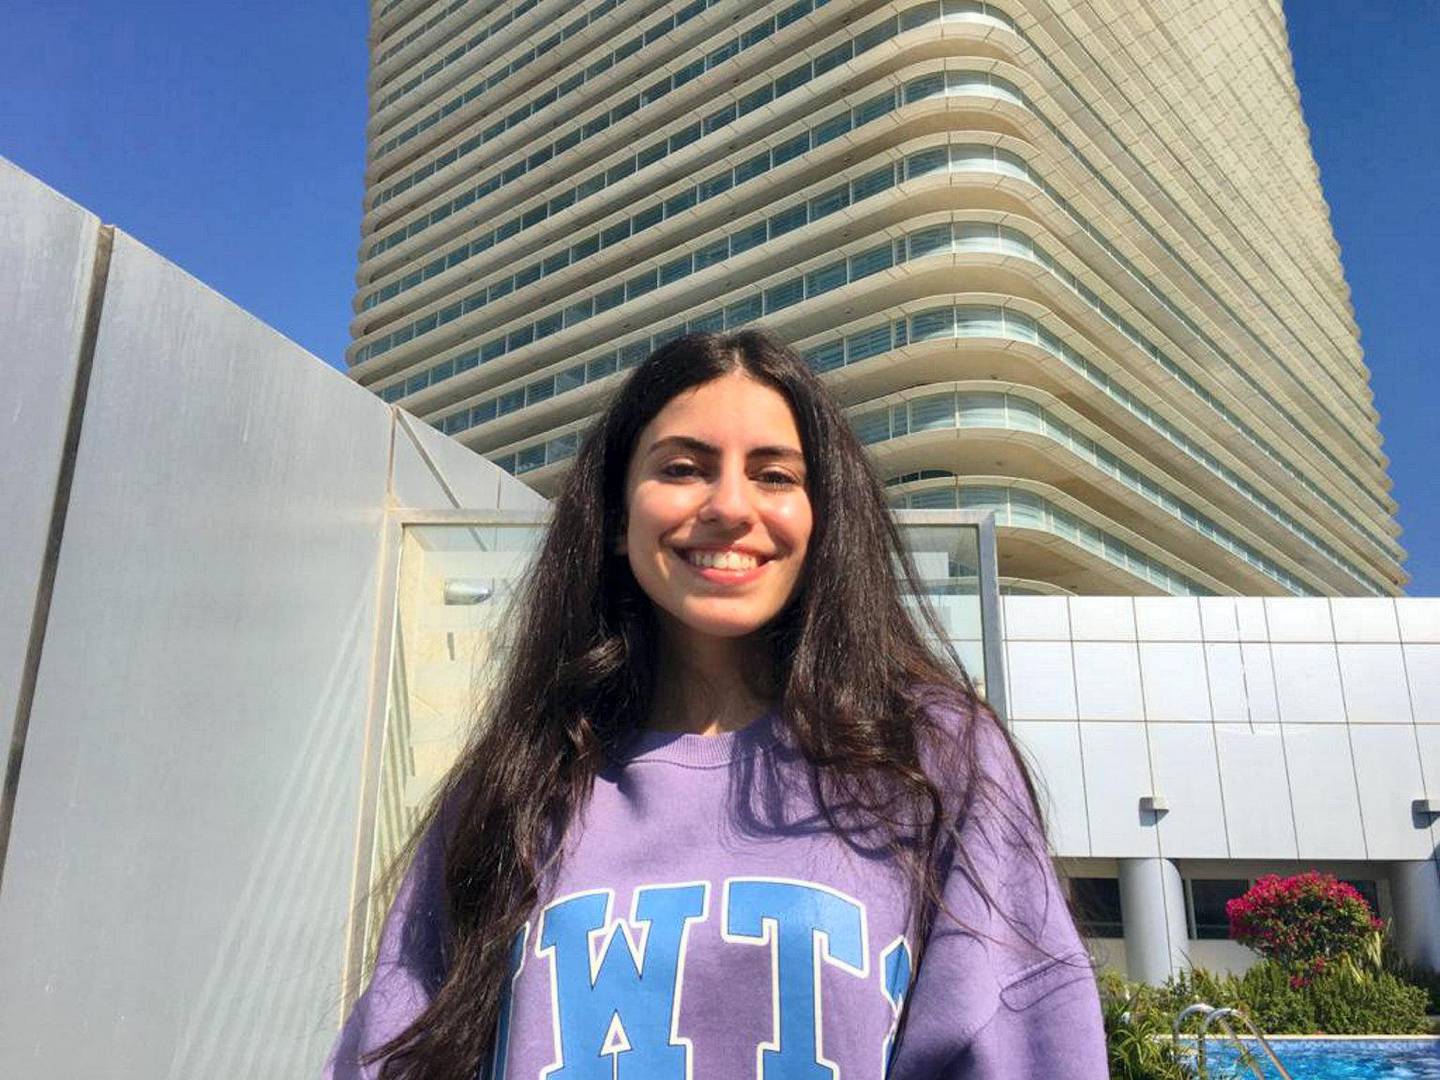 Lara Jarrar, a 17-year-old pupil at Raha International School Abu Dhabi, hopes to study Biology at NYU Abu Dhabi. Courtesy: Lara Jarrar